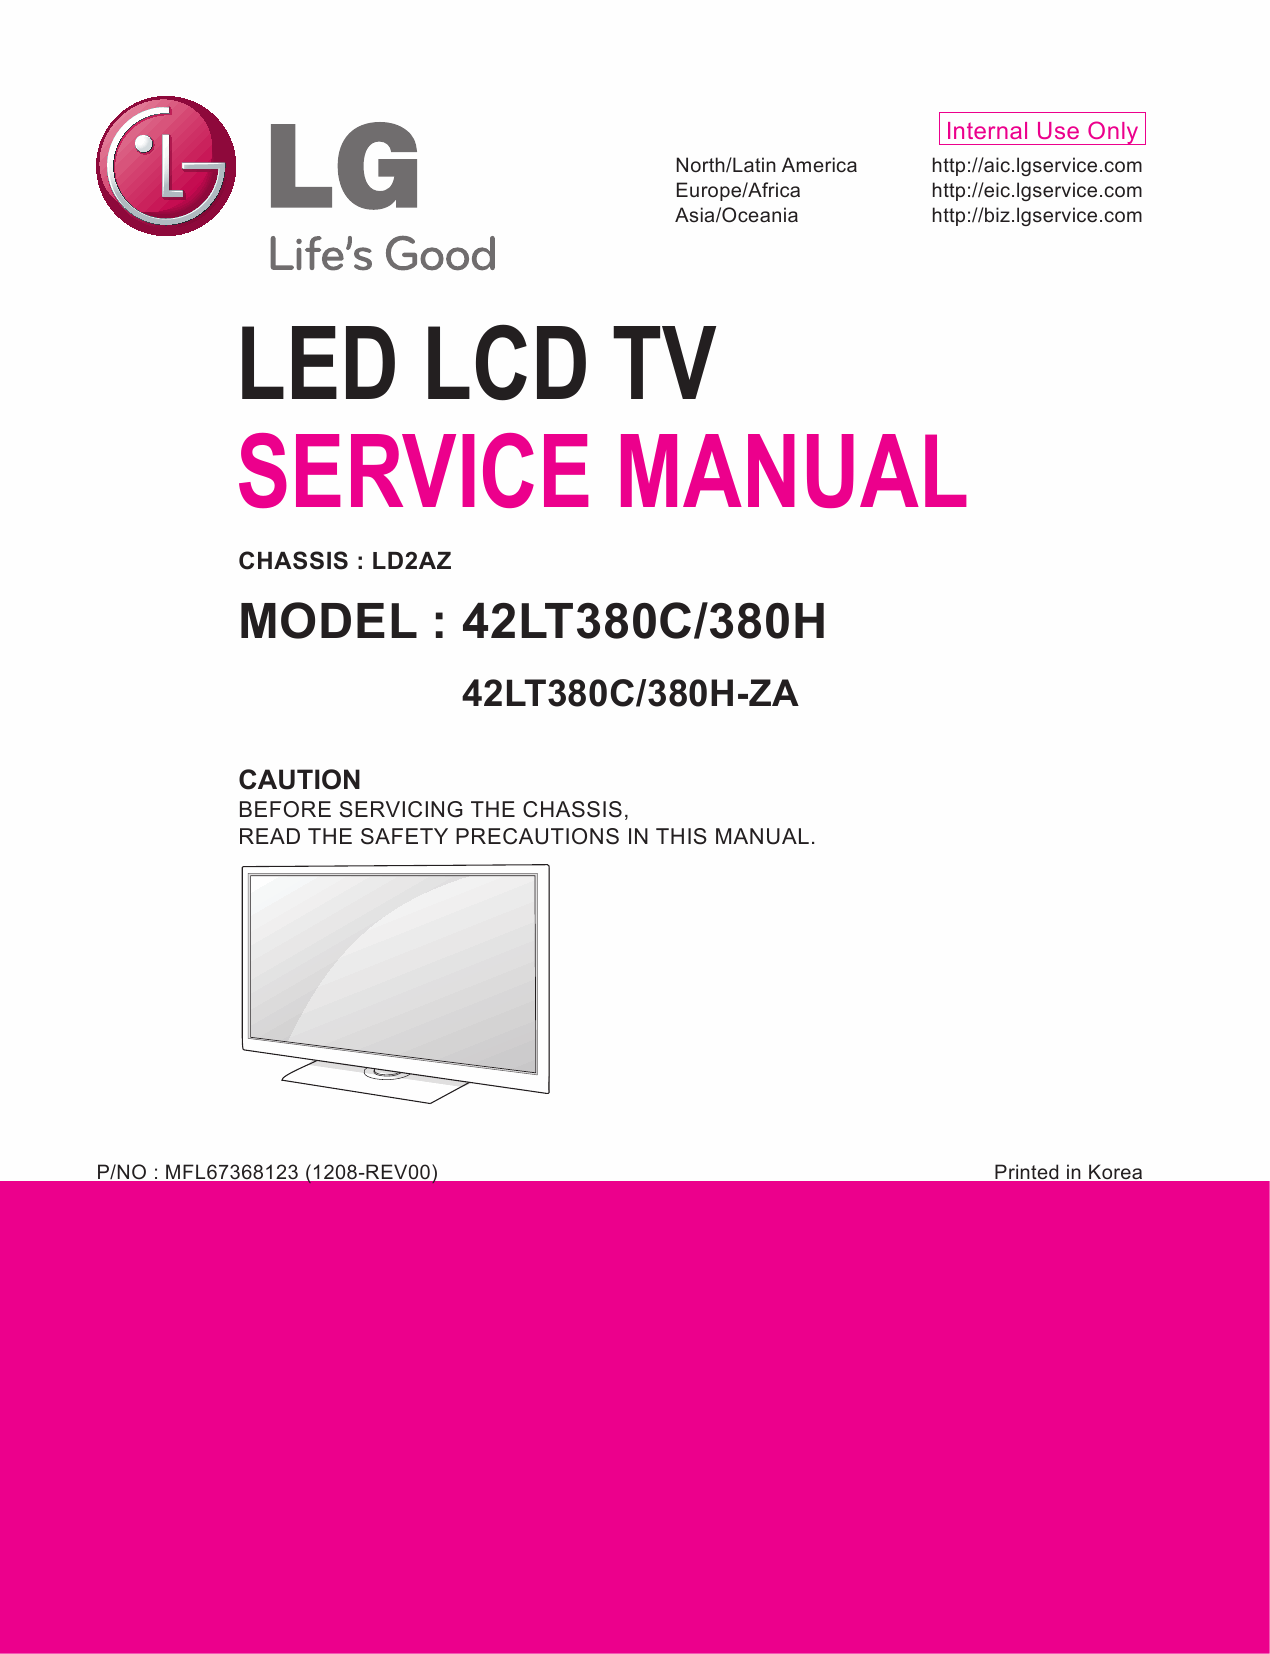 LG_LED_TV_42LT380C_380H_Service_Manual_2012_Qmanual.com-1